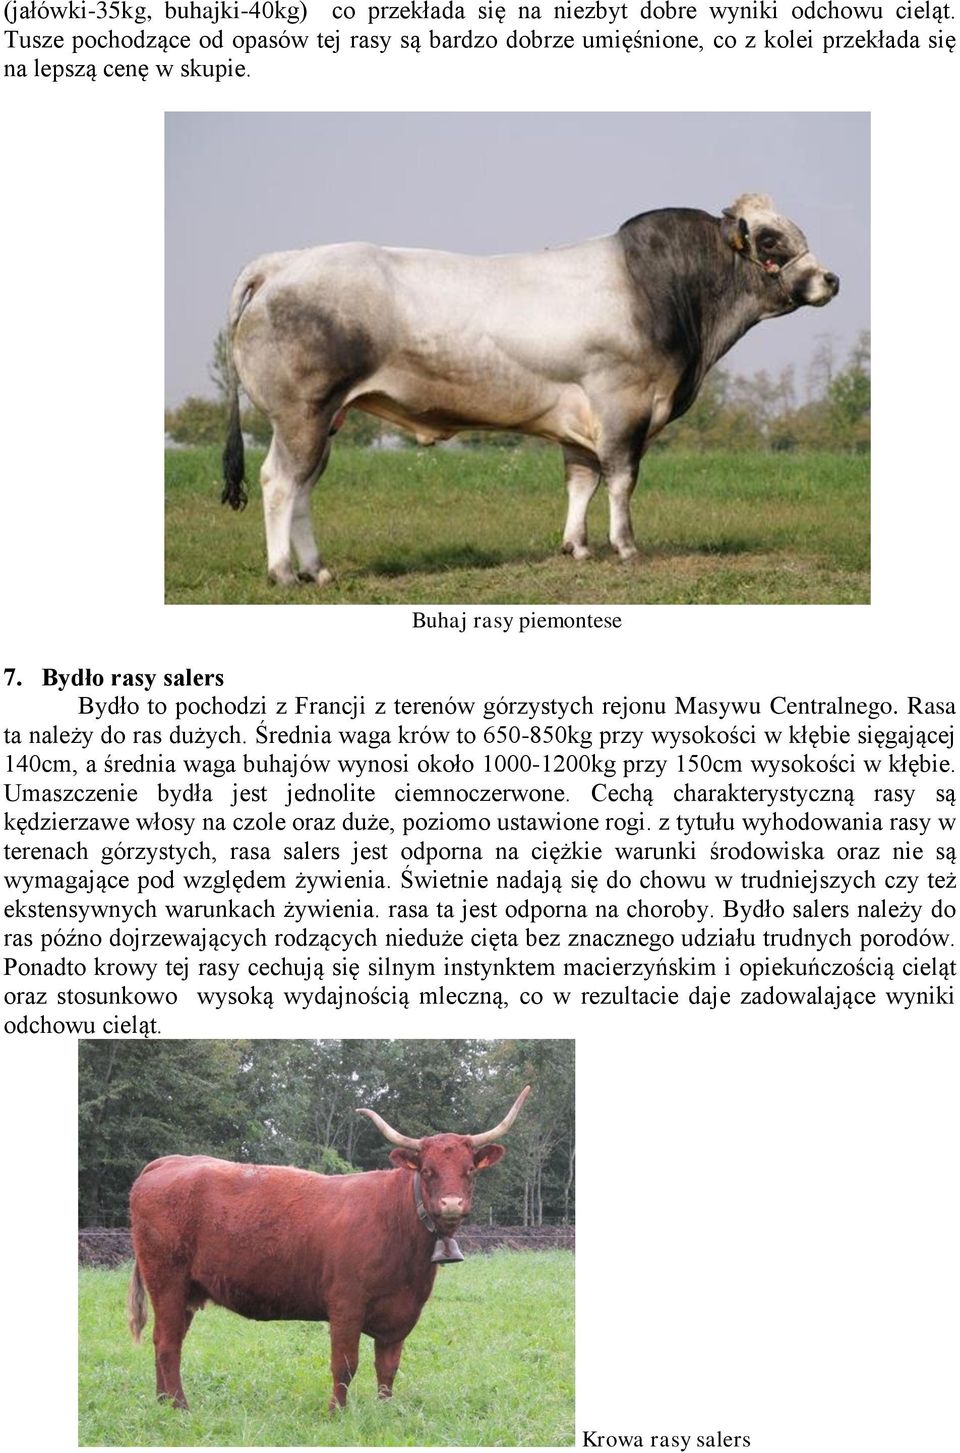 Średnia waga krów to 650-850kg przy wysokości w kłębie sięgającej 140cm, a średnia waga buhajów wynosi około 1000-1200kg przy 150cm wysokości w kłębie. Umaszczenie bydła jest jednolite ciemnoczerwone.